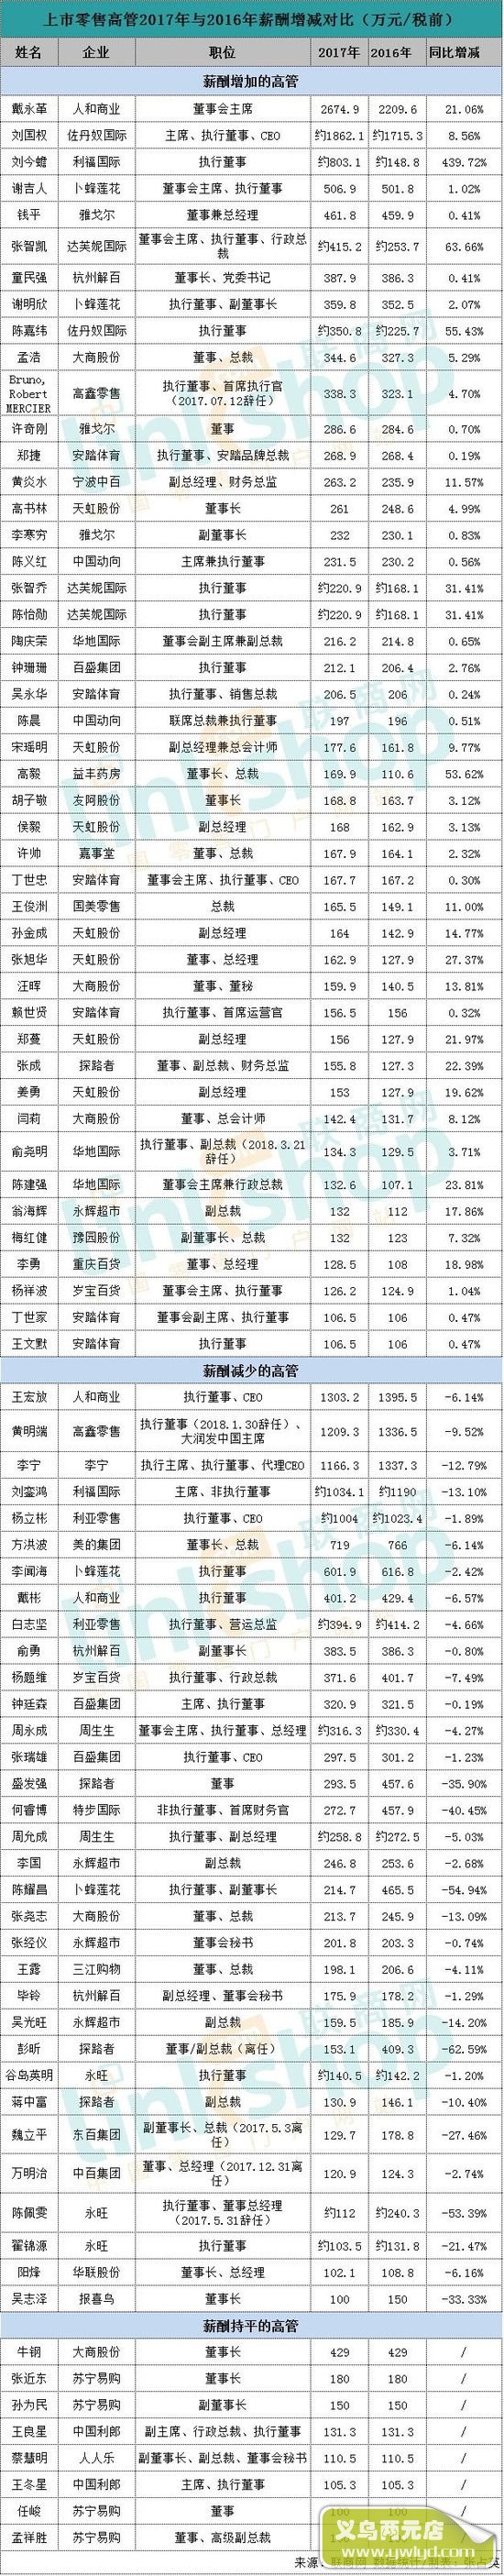 2017年中国上市零售企业高管薪酬排行榜